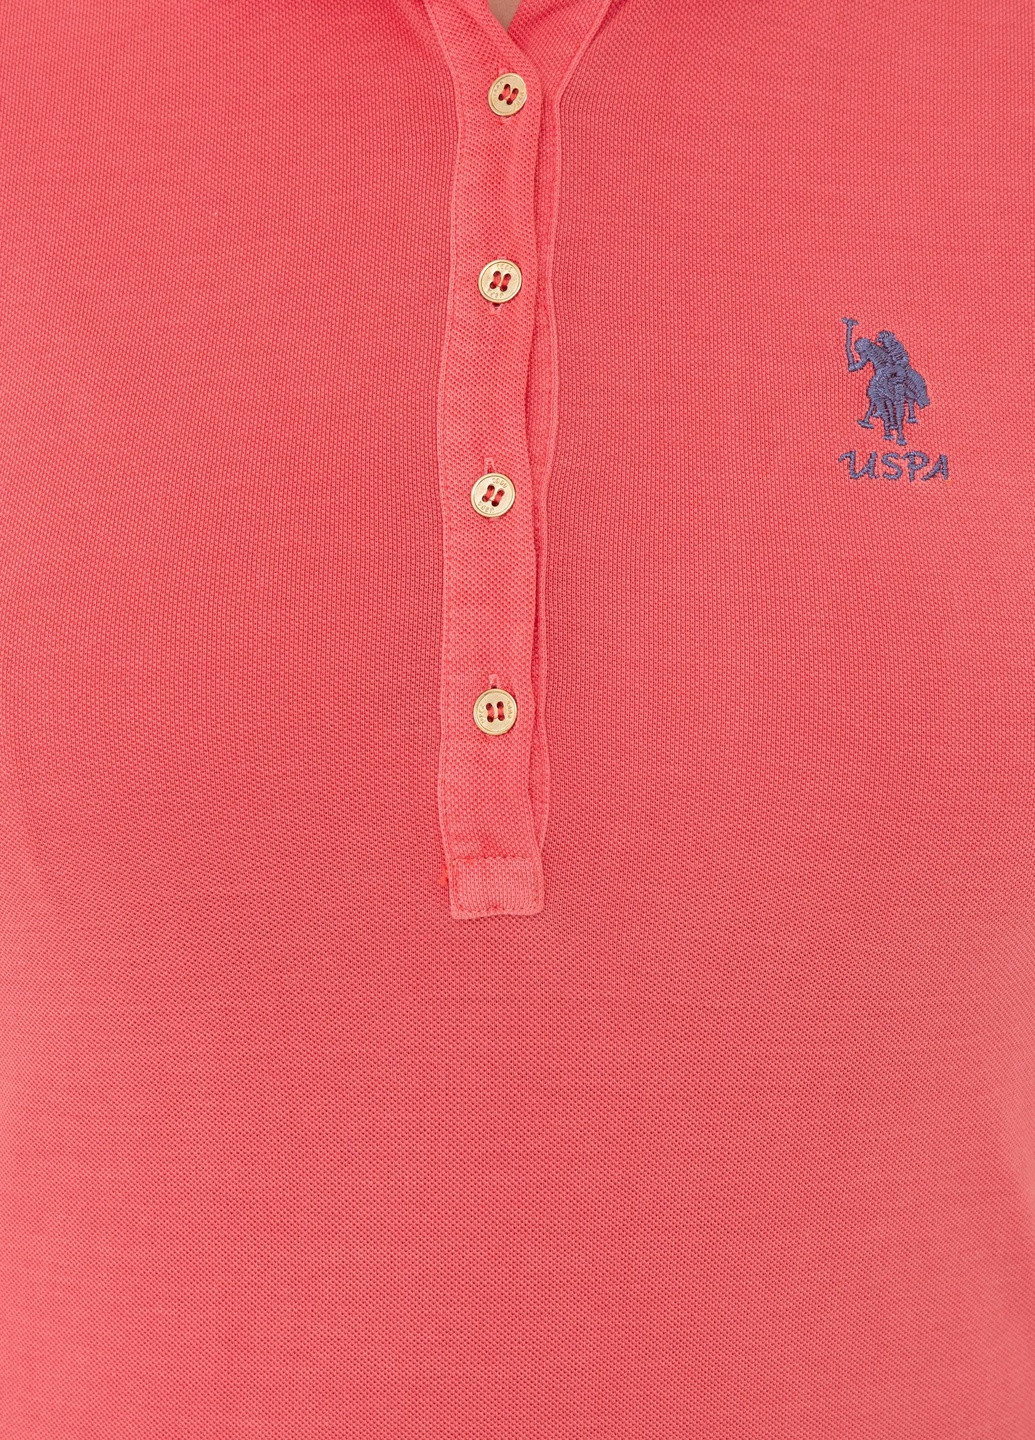 Красная футболка u.s/ polo assn. женская U.S. Polo Assn.